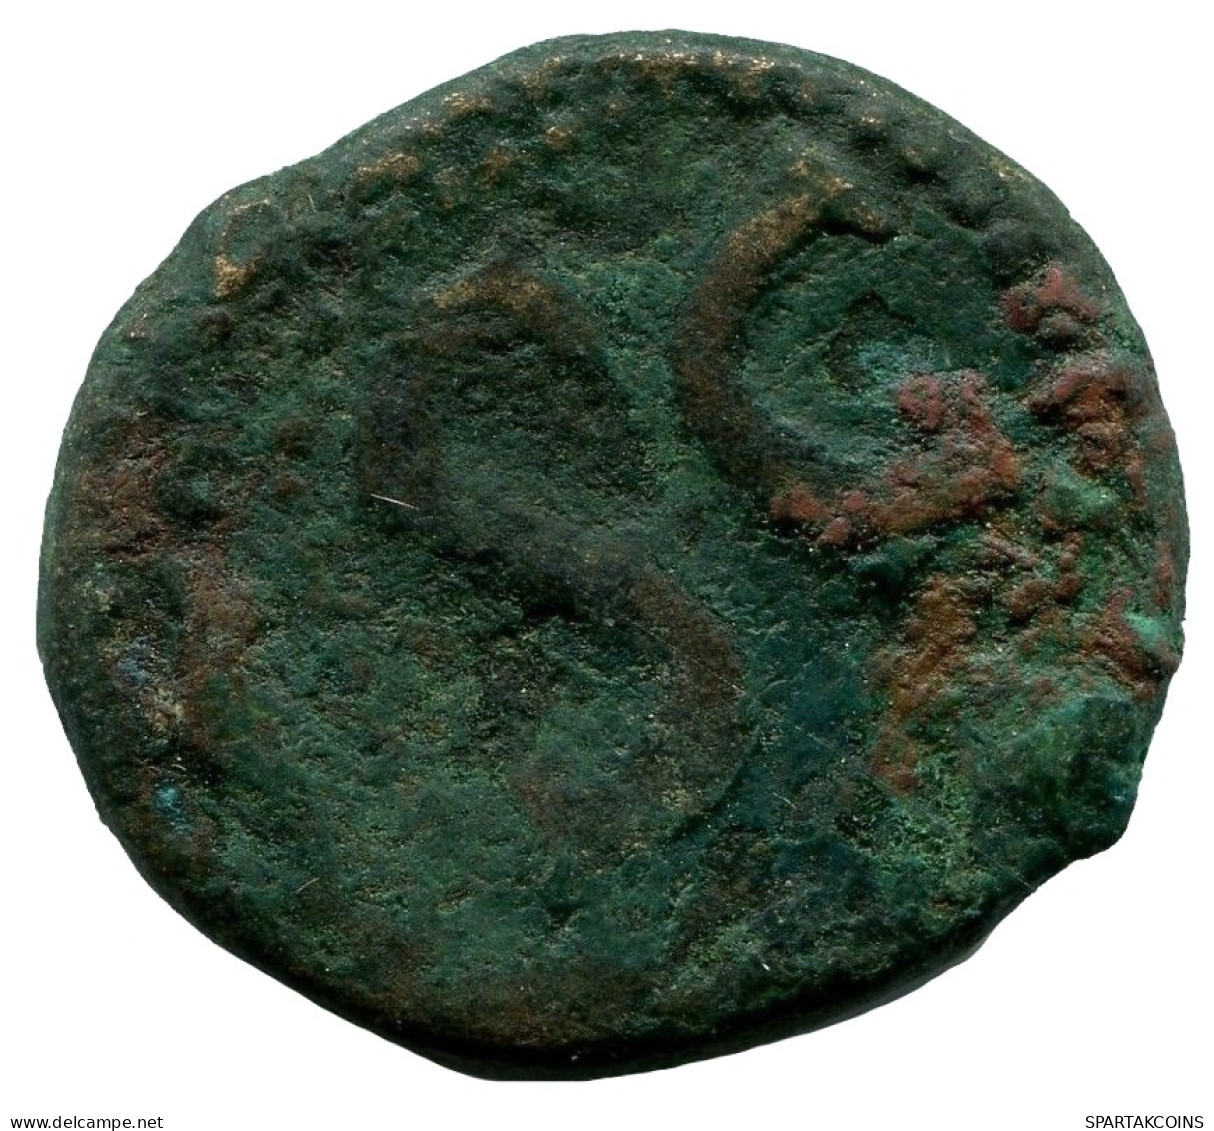 RÖMISCHE PROVINZMÜNZE Roman Provincial Ancient Coin #ANC12480.14.D.A - Provincia